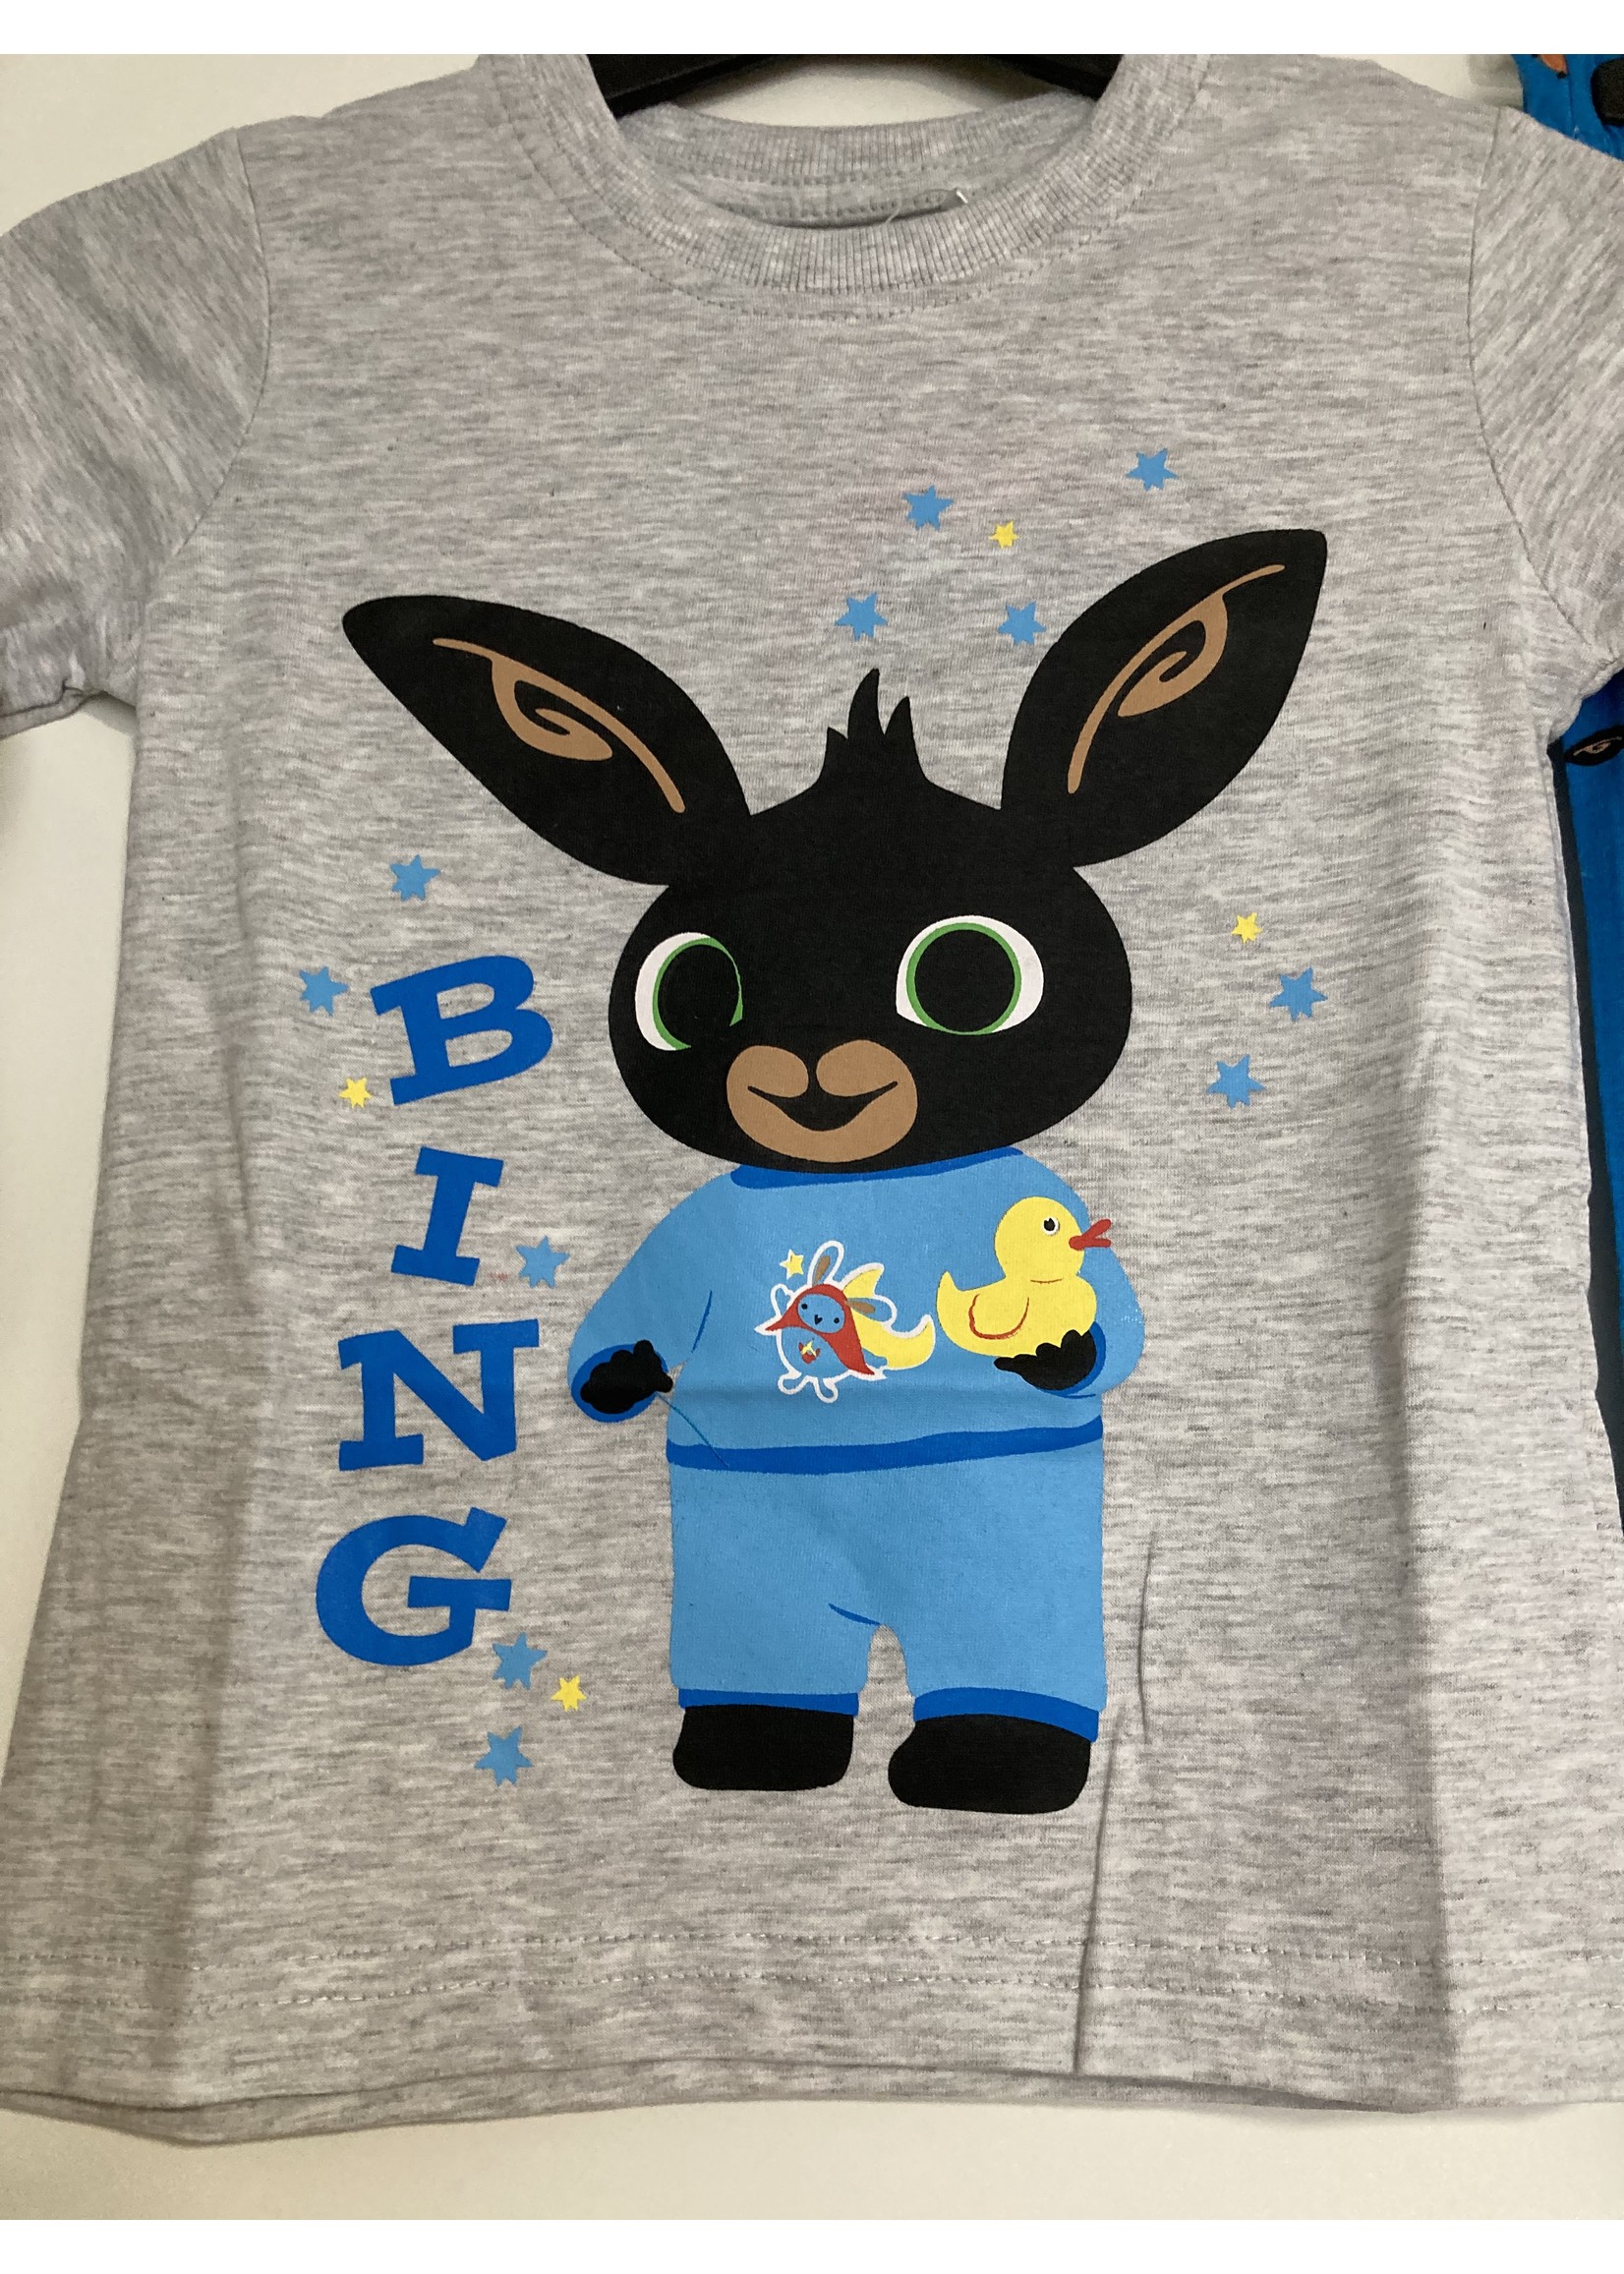 Bing Konijntje Bing pyjama van Bing grijs-blauw